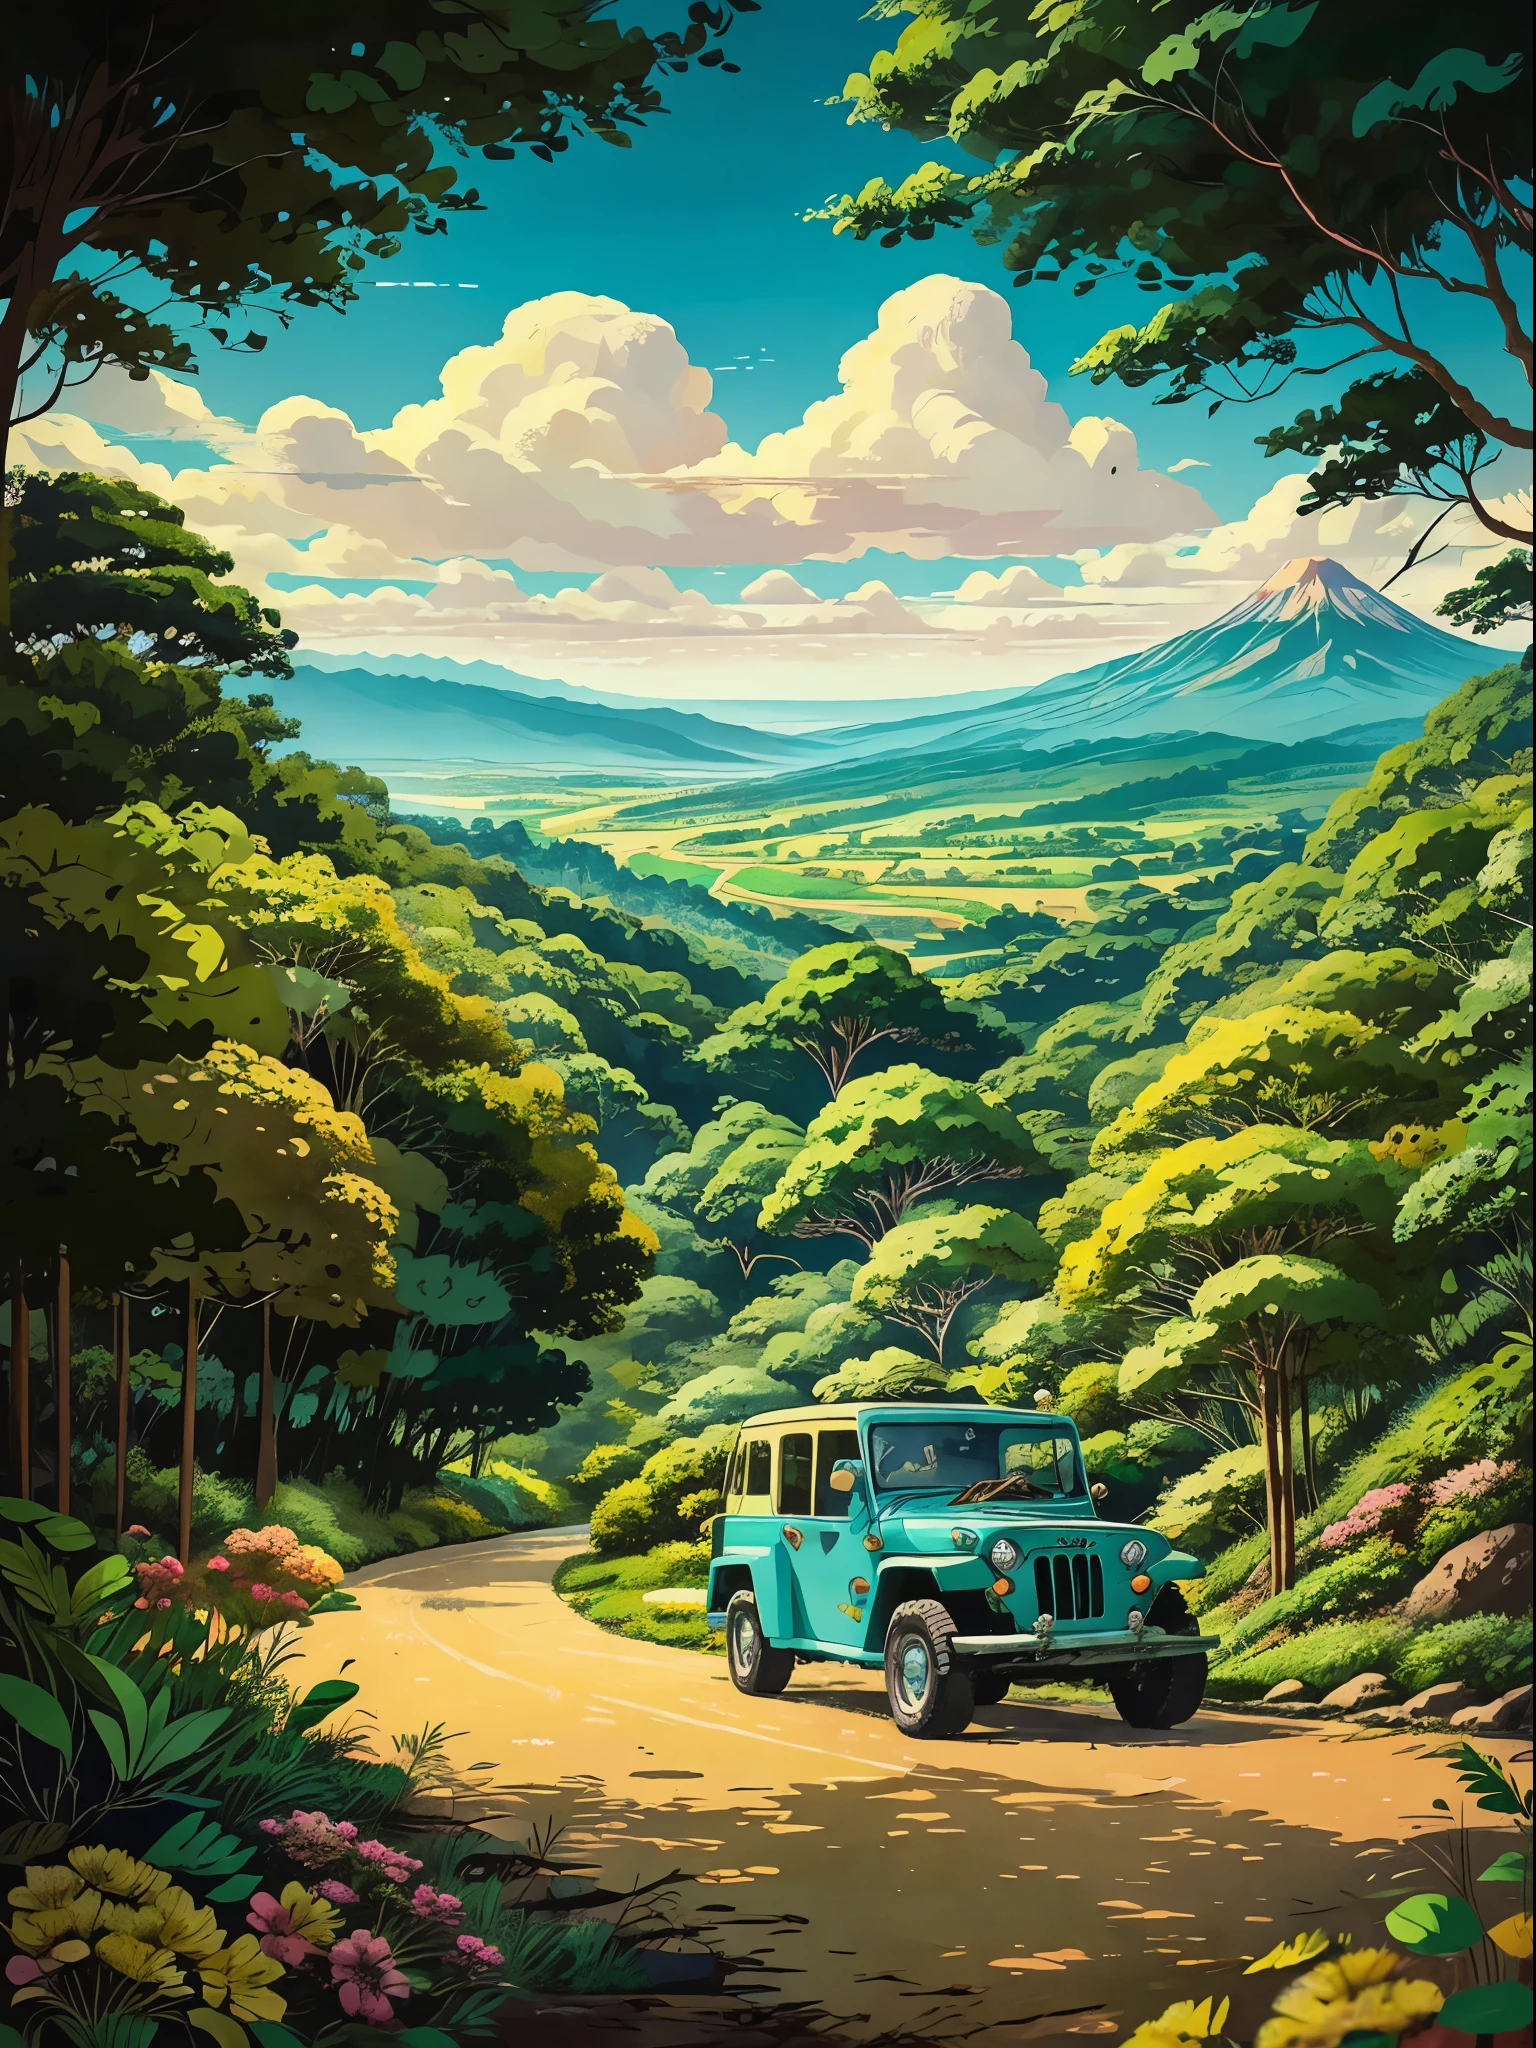 Um comovente anime retrô inspirado em um detalhe de jipe willys com fundo de belas florestas tropicais, campo de arroz à distância e coqueiro, estilo do Studio Ghibli e Hayao Miyazaki